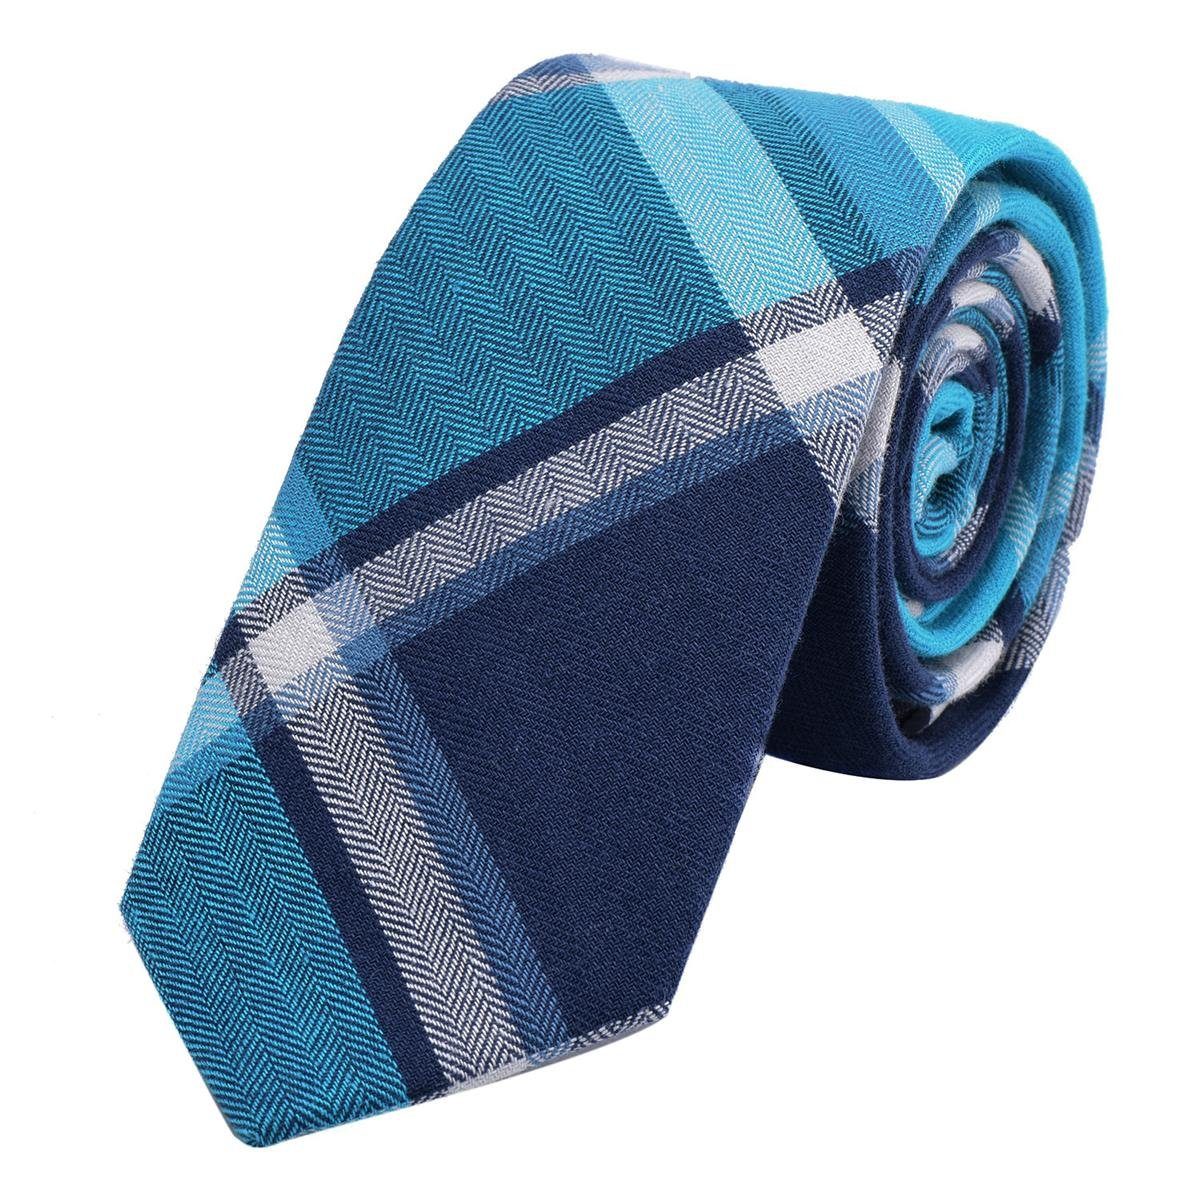 DonDon Krawatte Herren Krawatte 6 cm mit Karos oder Streifen (Packung, 1-St., 1x Krawatte) Baumwolle, kariert oder gestreift, für Büro oder festliche Veranstaltungen blau kariert 1 | Breite Krawatten